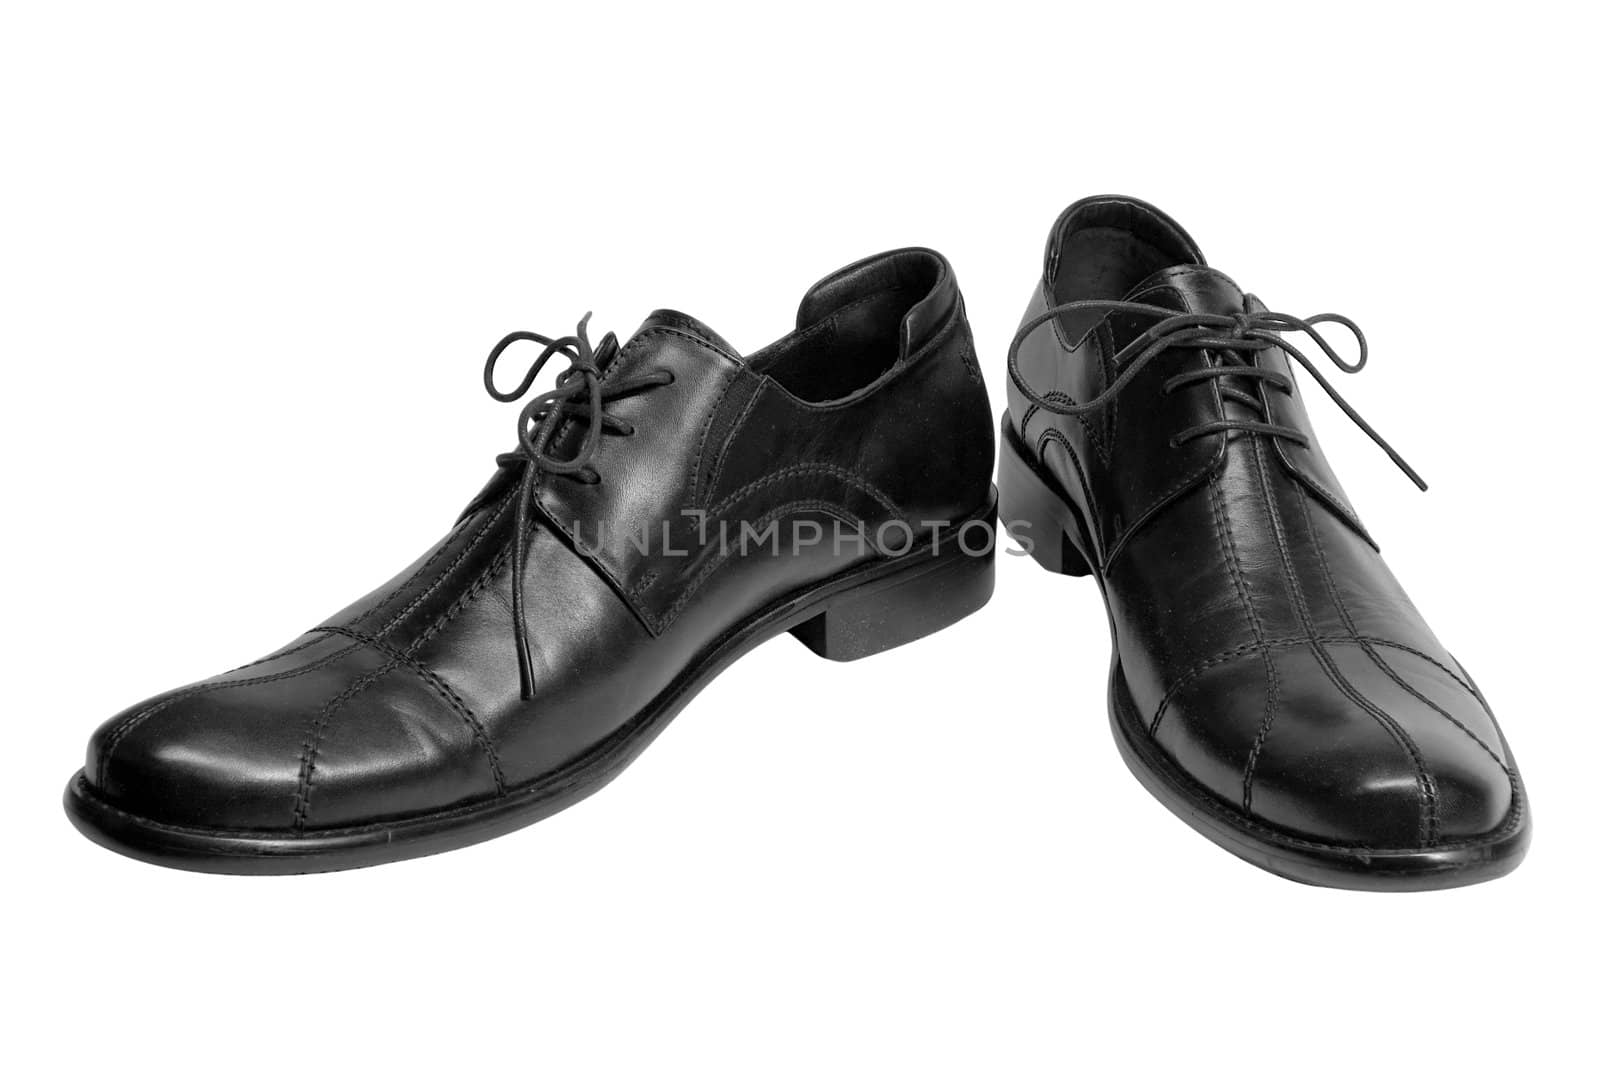 Stylish black shoes isolated on a white background